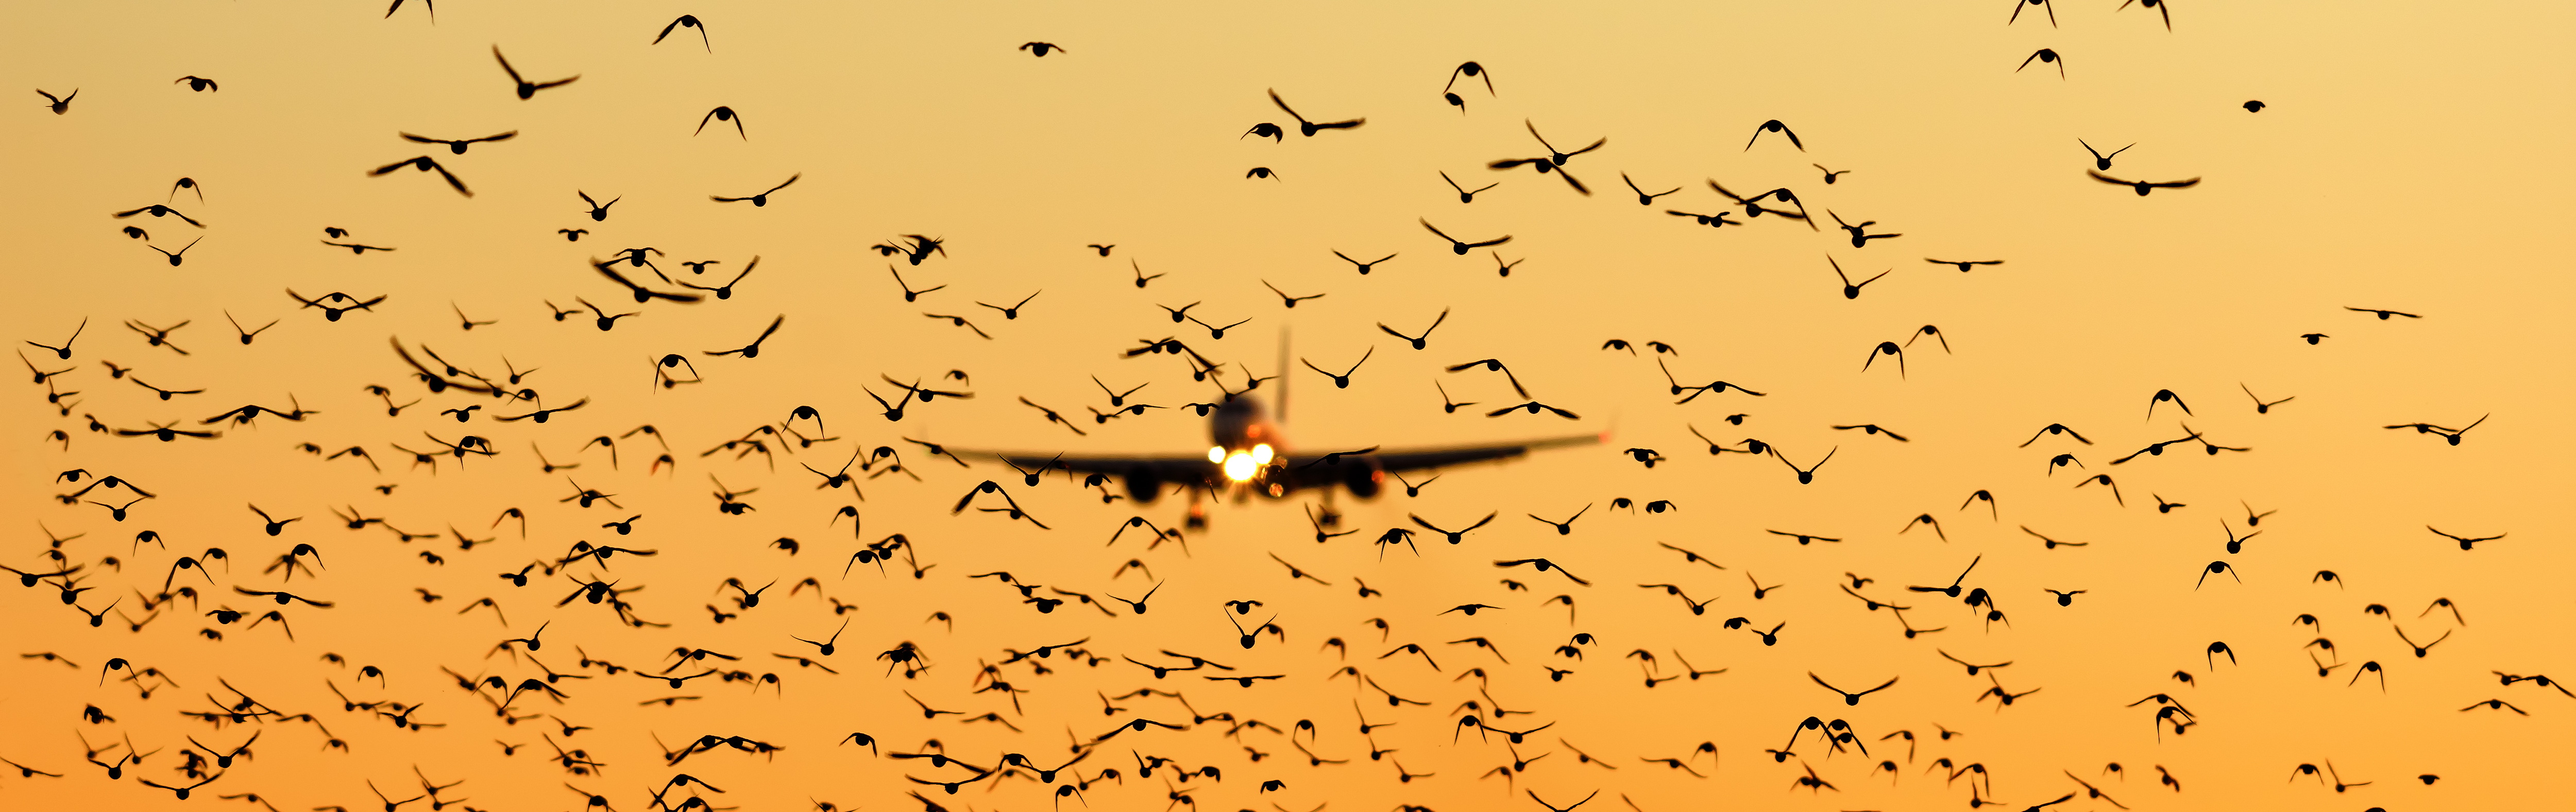 Ein Passagierflugzeug im Landeanflug, davor ein Vogelschwarm.